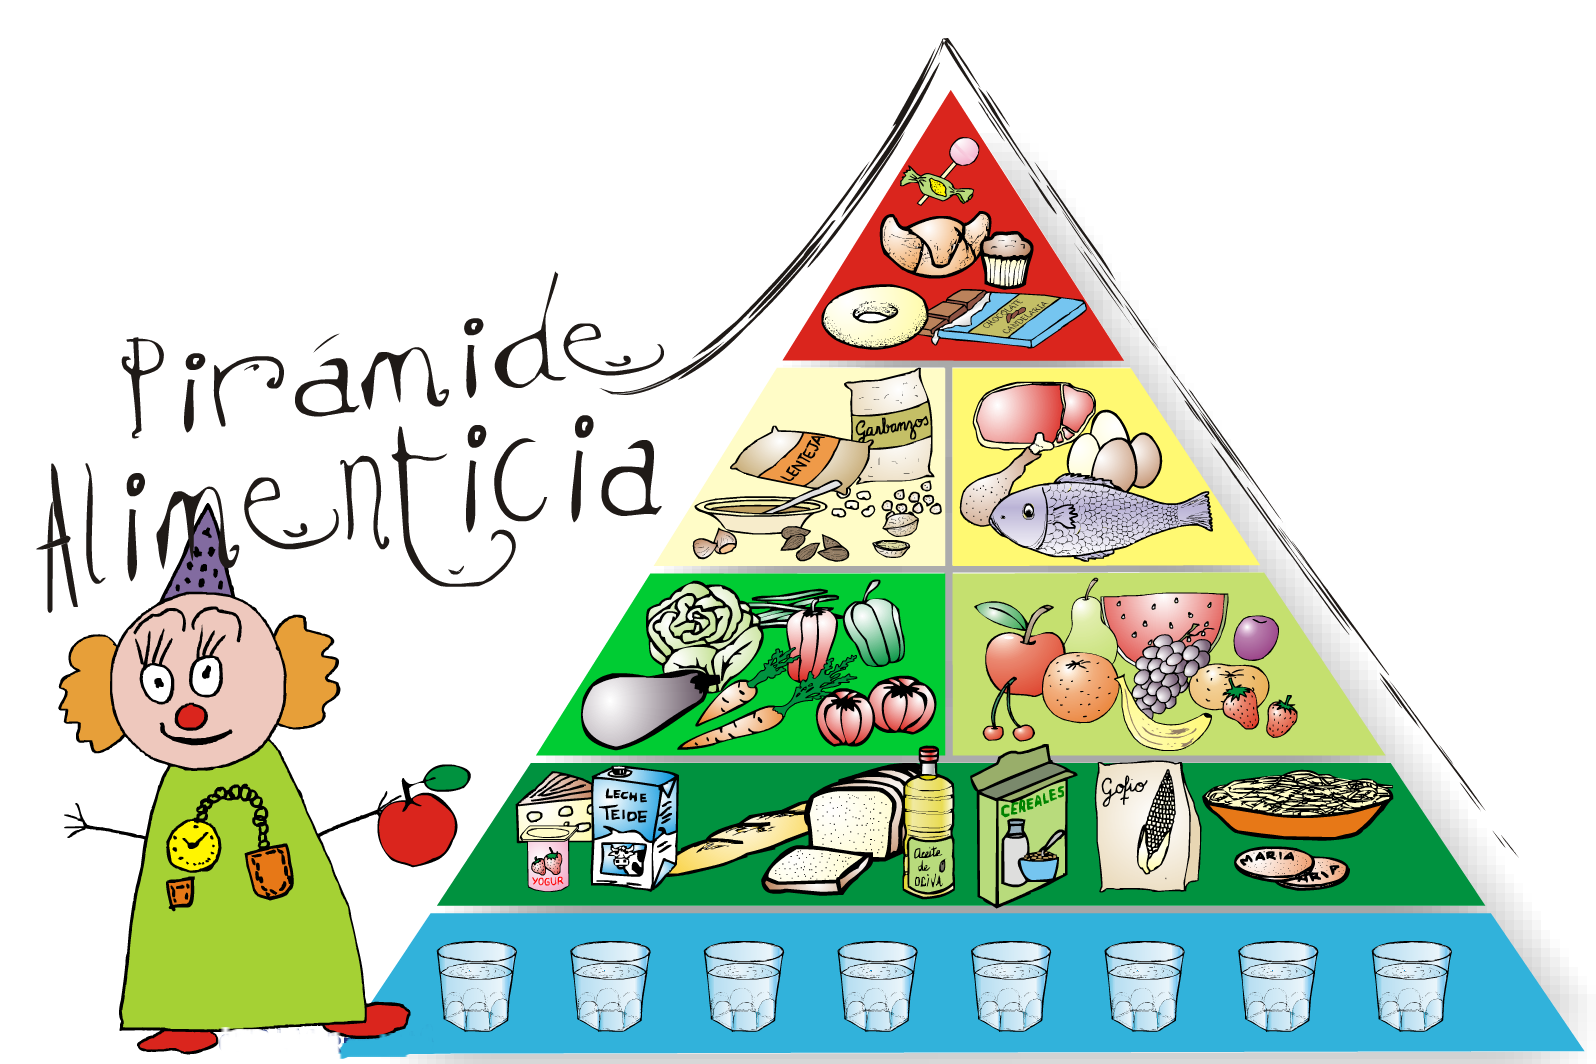 pyramide-alimenticia